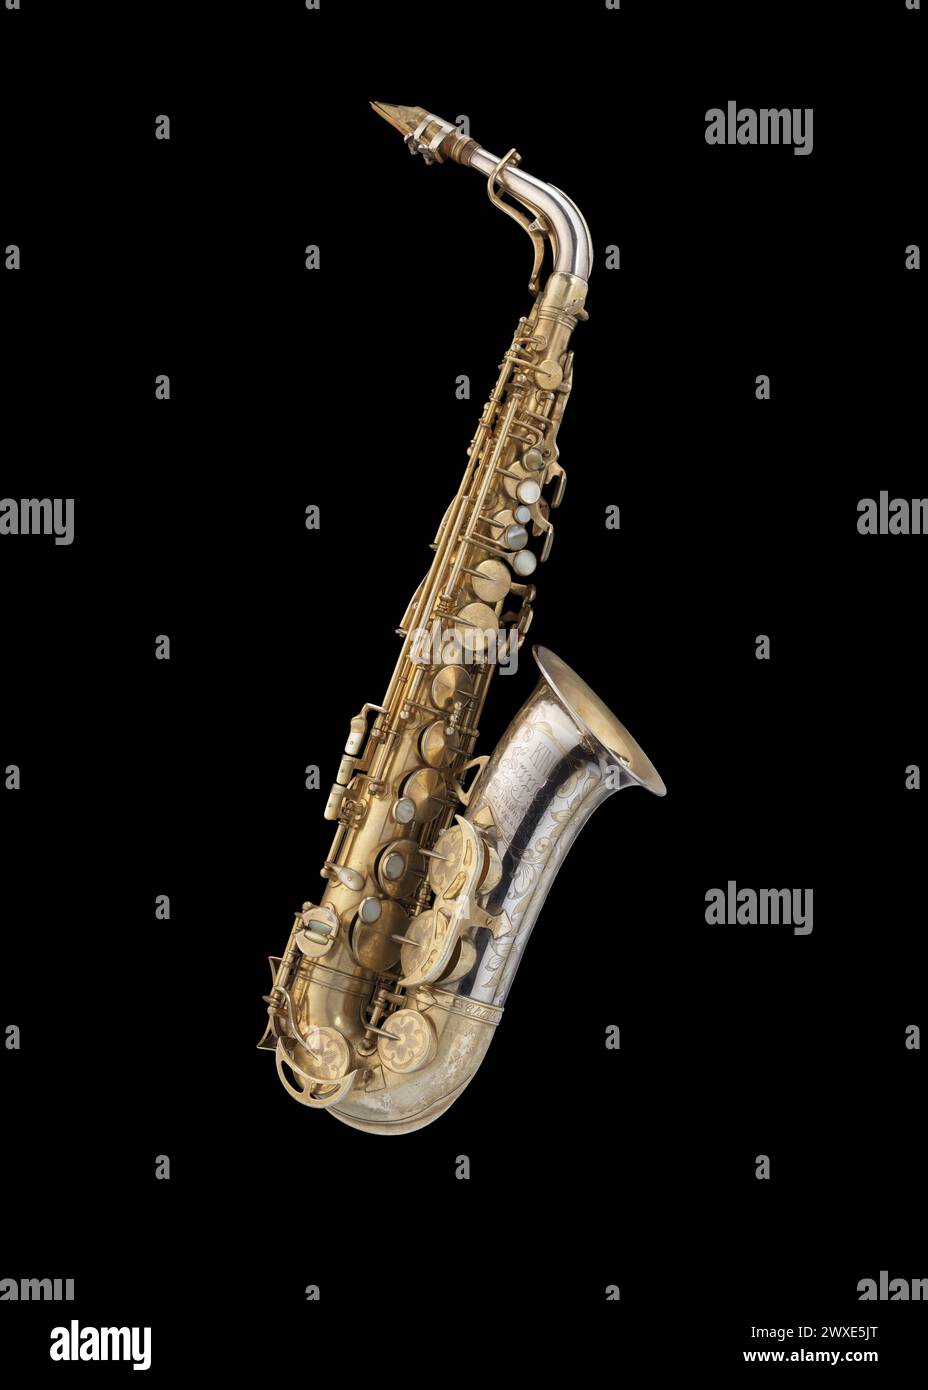 Sassofono alto di proprietà e interpretato dal musicista jazz Charlie Parker. Il sassofono è composto da sette parti: Corpo, collo, 2 boccagli, 2 legature e A. Foto Stock